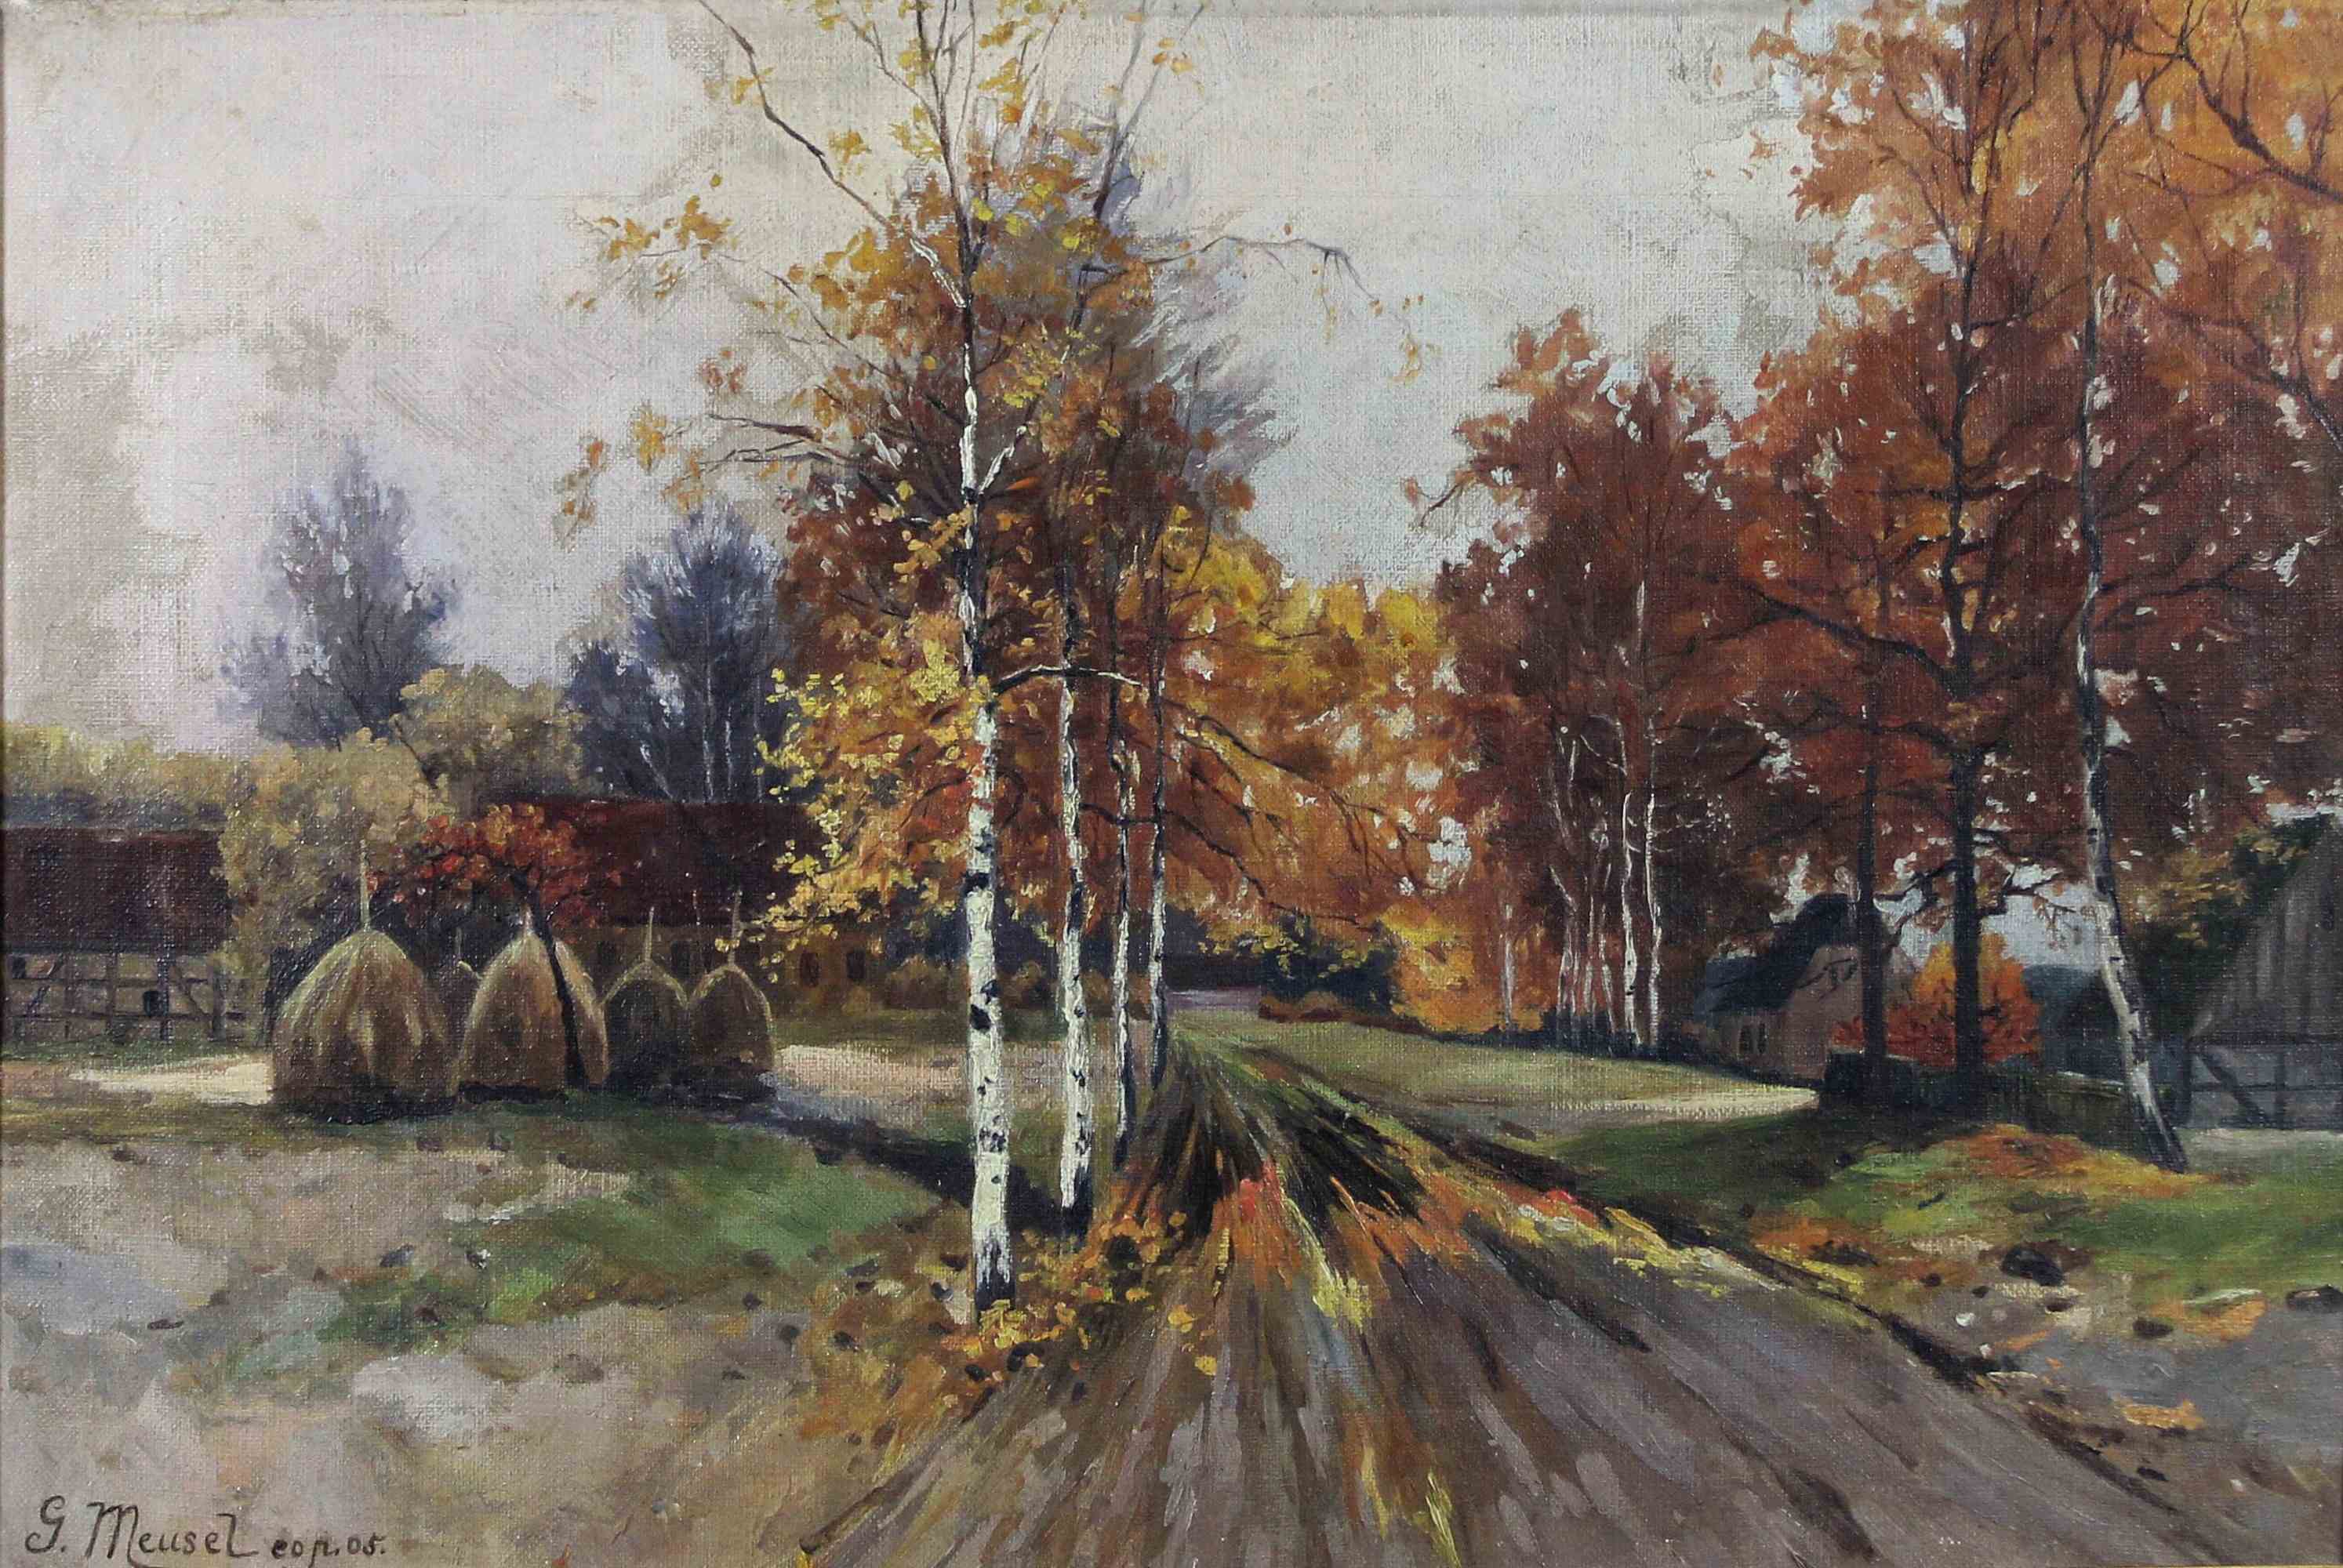 G. Meusel, Herbstlandschaft, 1905. Öl auf Leinwand, unten links signiert und datiert. Lichtmaß: 31